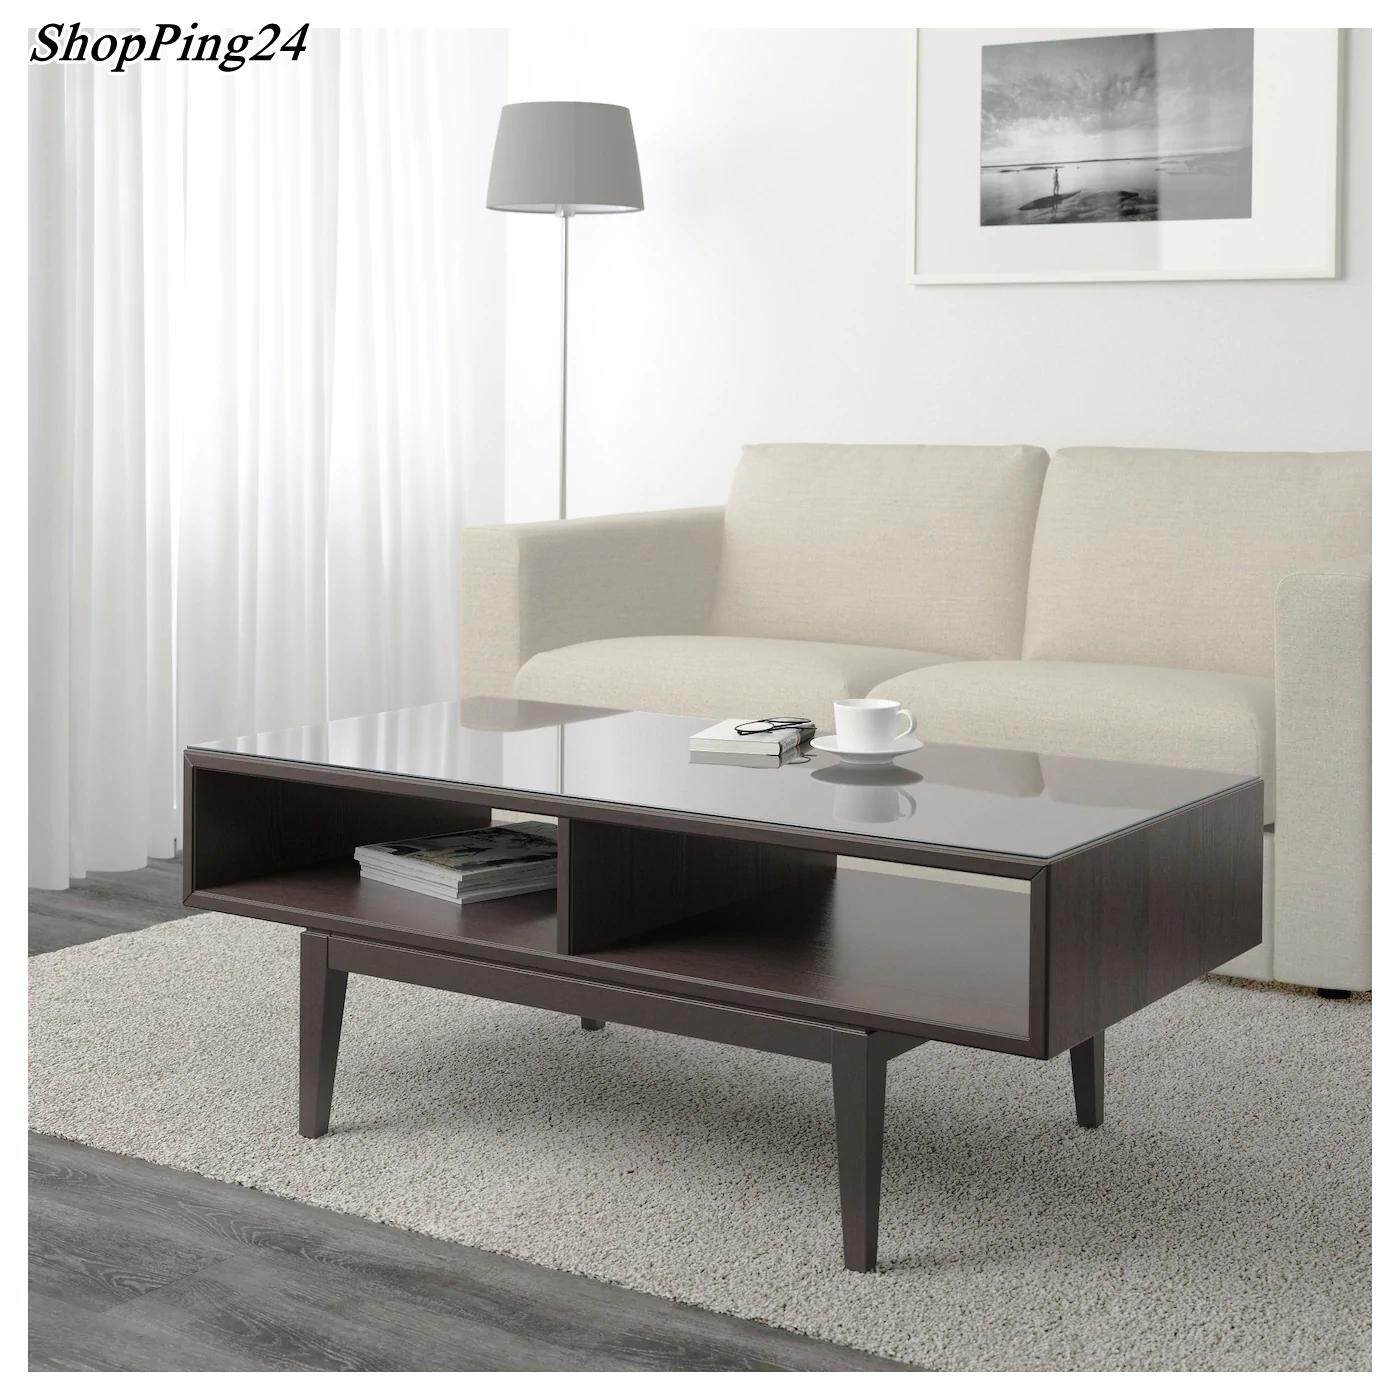 โต๊ะกลาง โต๊ะกาแฟ โต๊ะกลางโซฟา Table Coffee table brown glass  REGURASOUT 118x60 cm